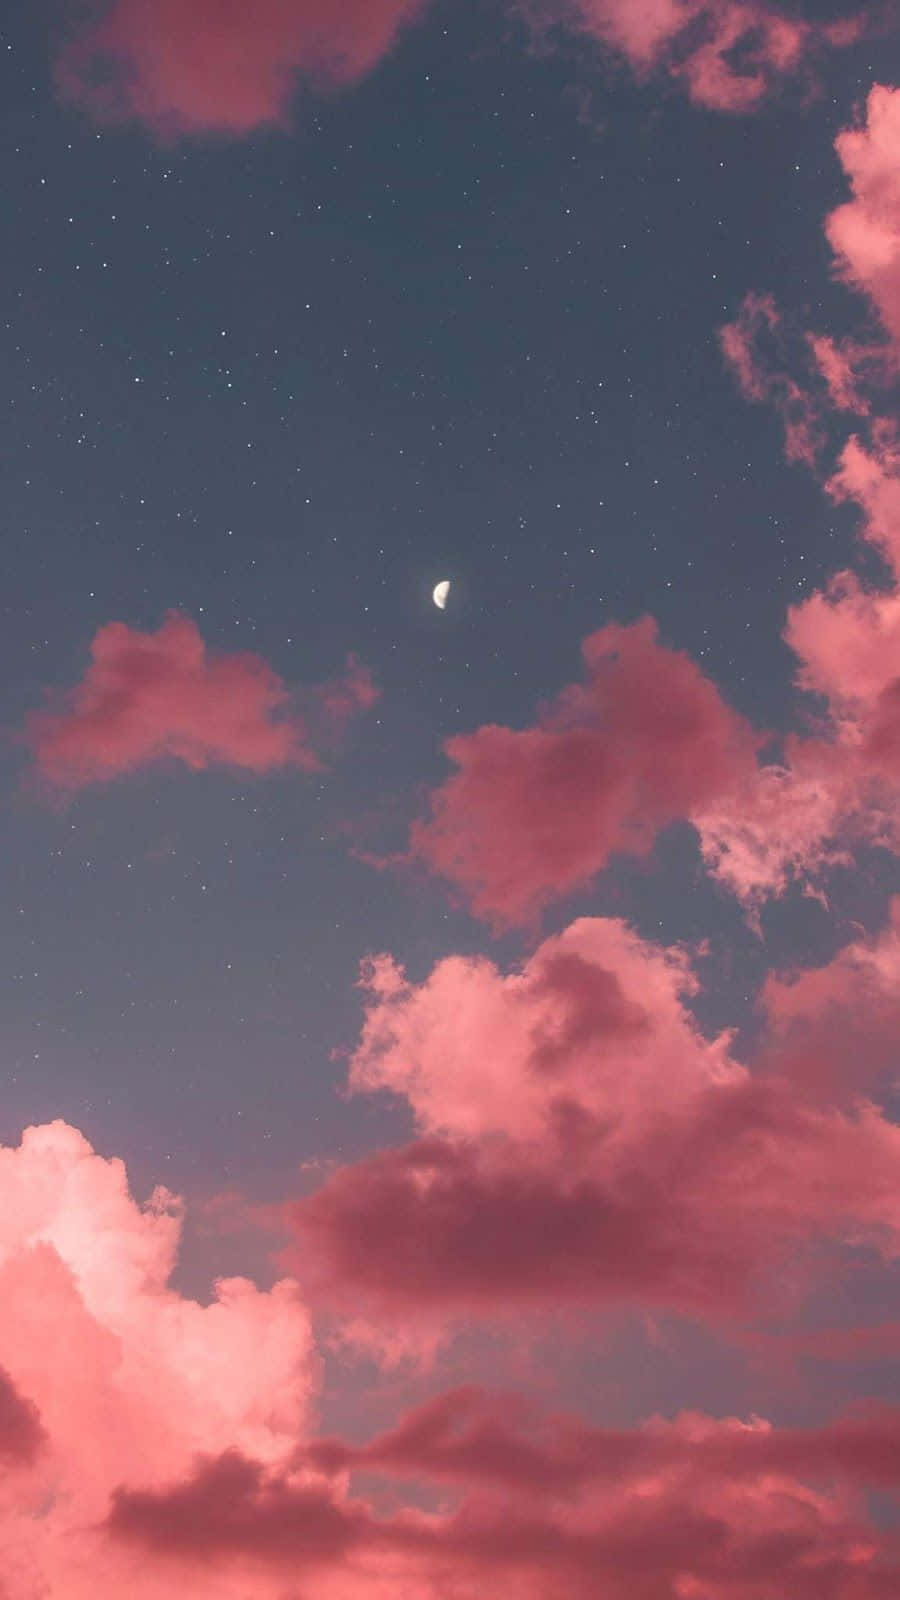 Imagende Un Cielo Rosa Con Nubes